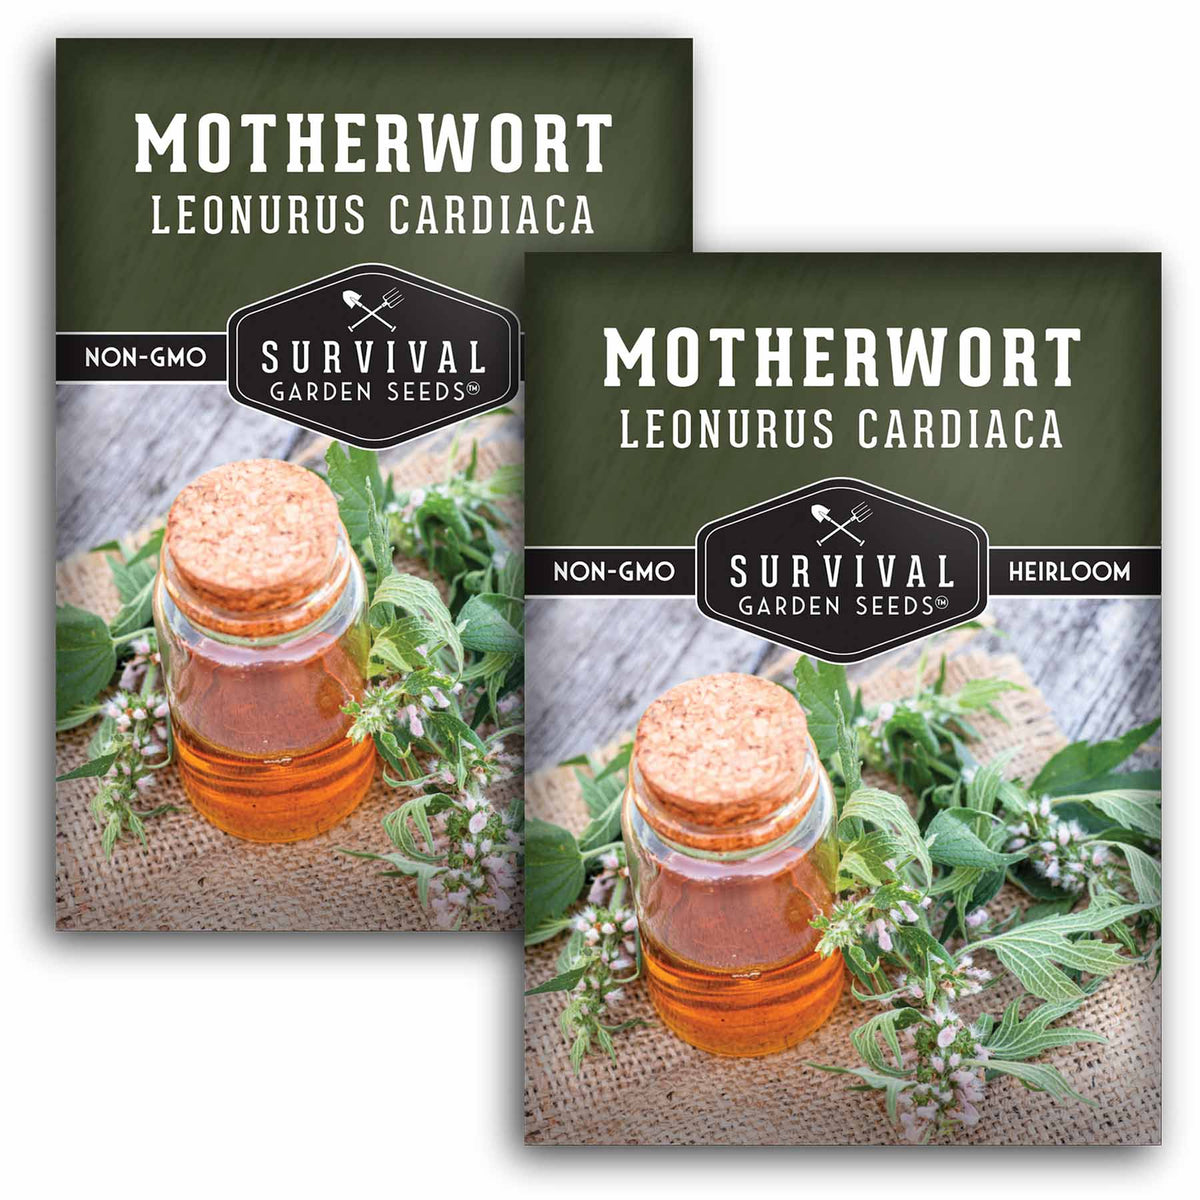 2 packets of Motherwort seeds